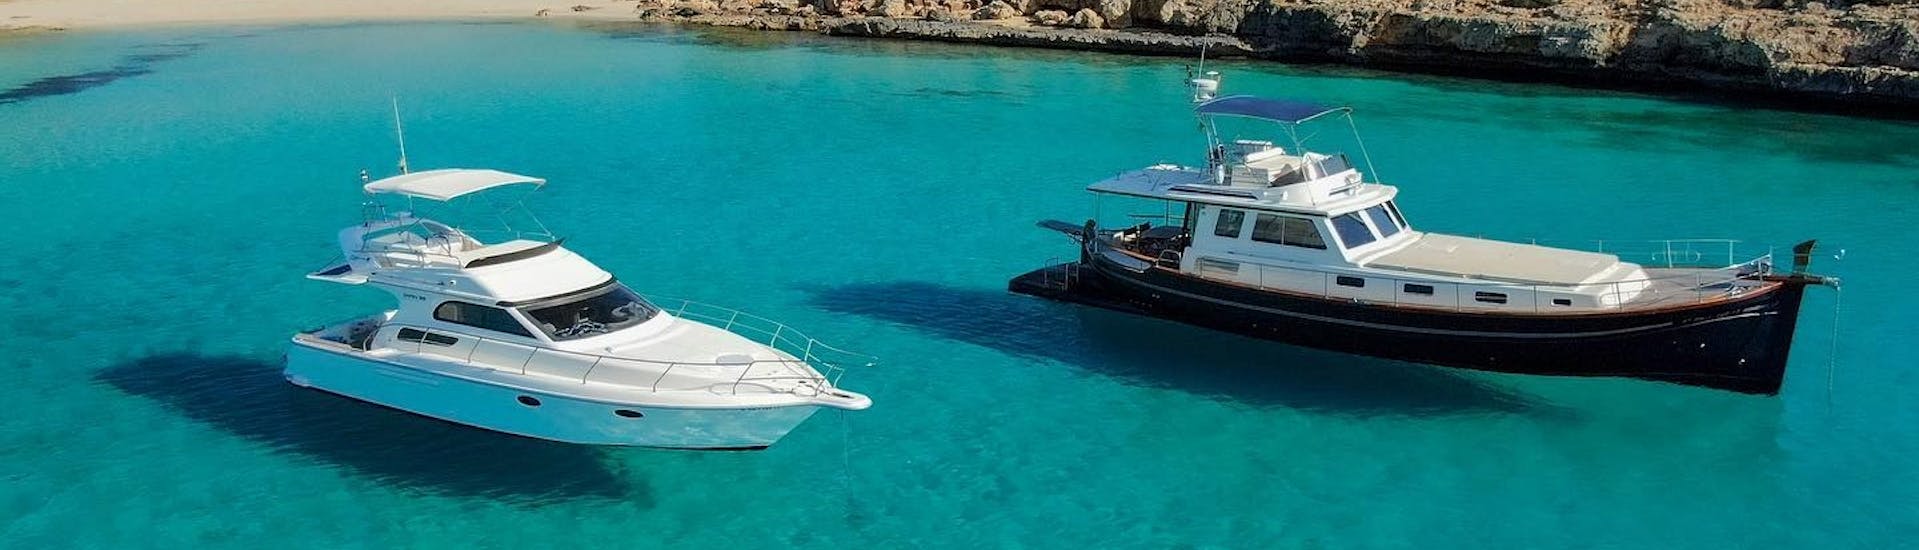 Notre yacht lors d'une Balade privée en yacht à Cala Varques et Cala Virgili avec Charters Llevant Mallorca.